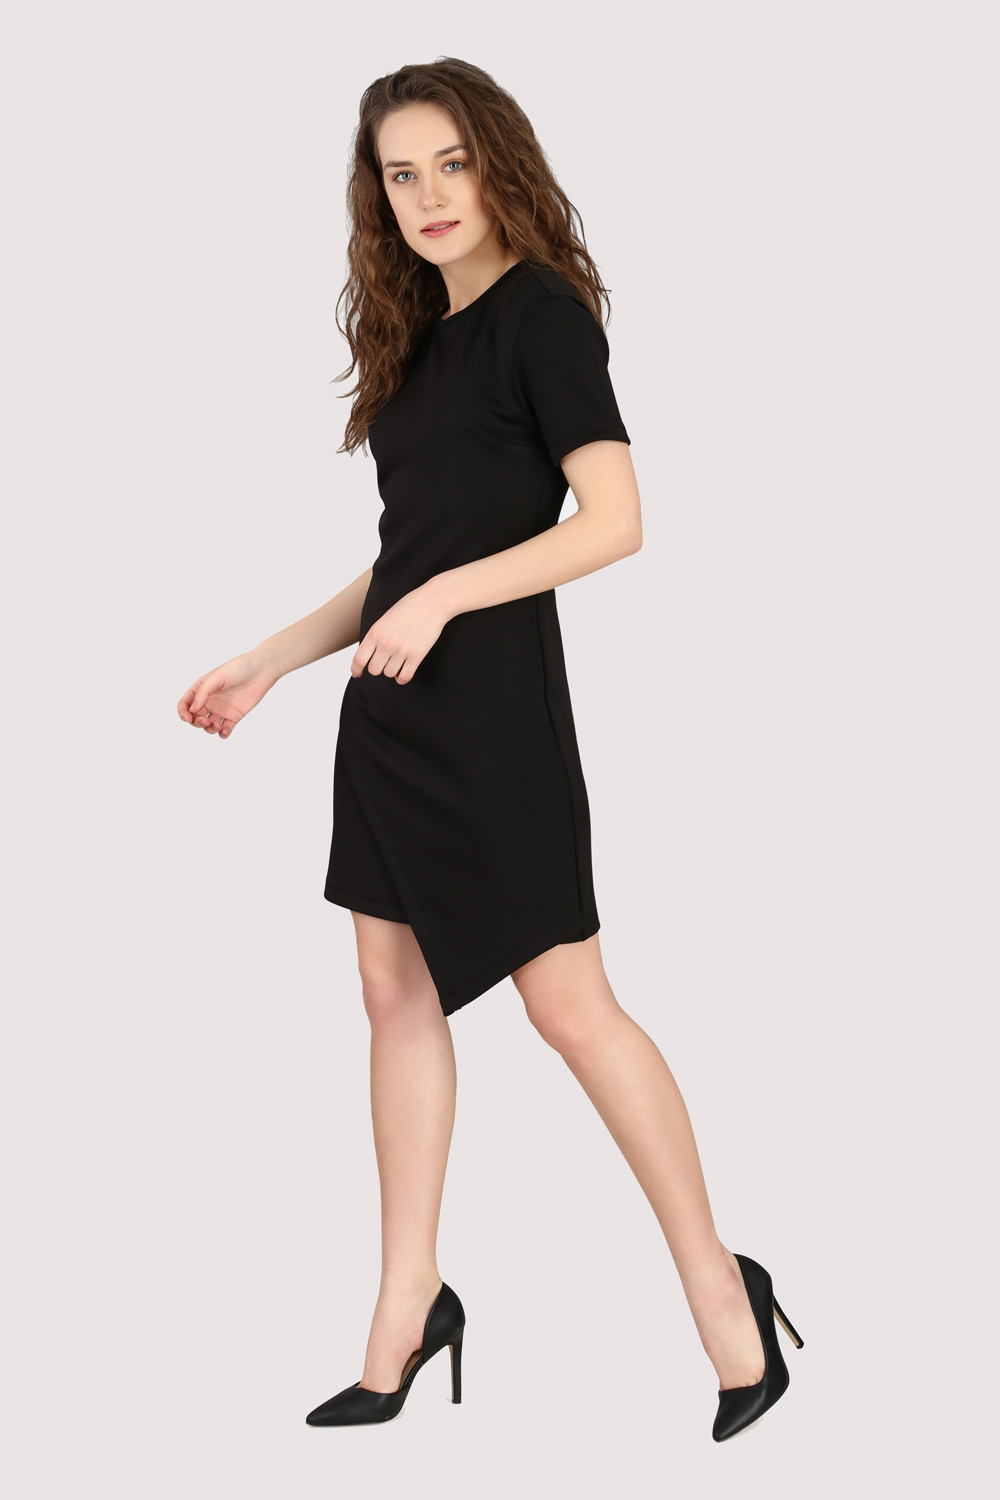 Black Asymmetric Dress -2